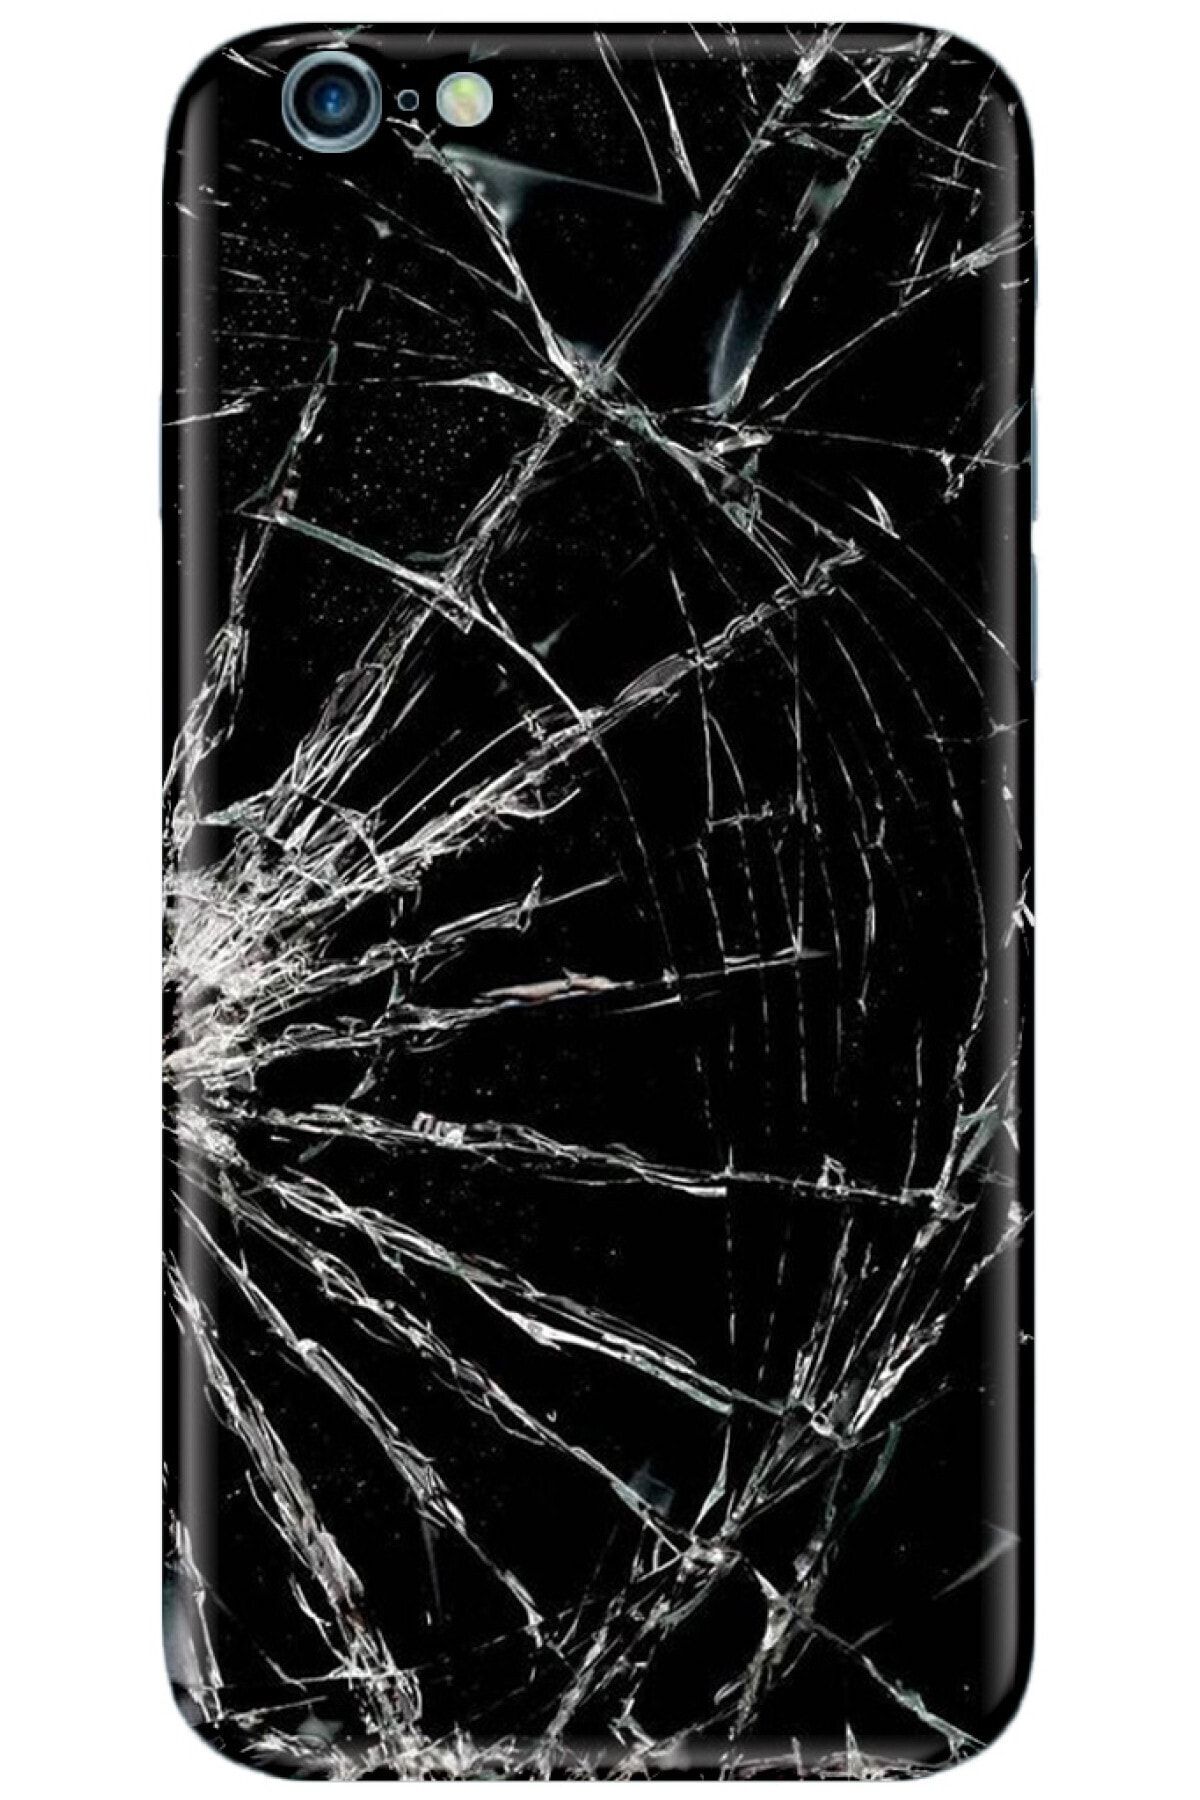 Noprin Apple Iphone 6 Kılıf Silikon Baskılı Desenli Arka Kapak